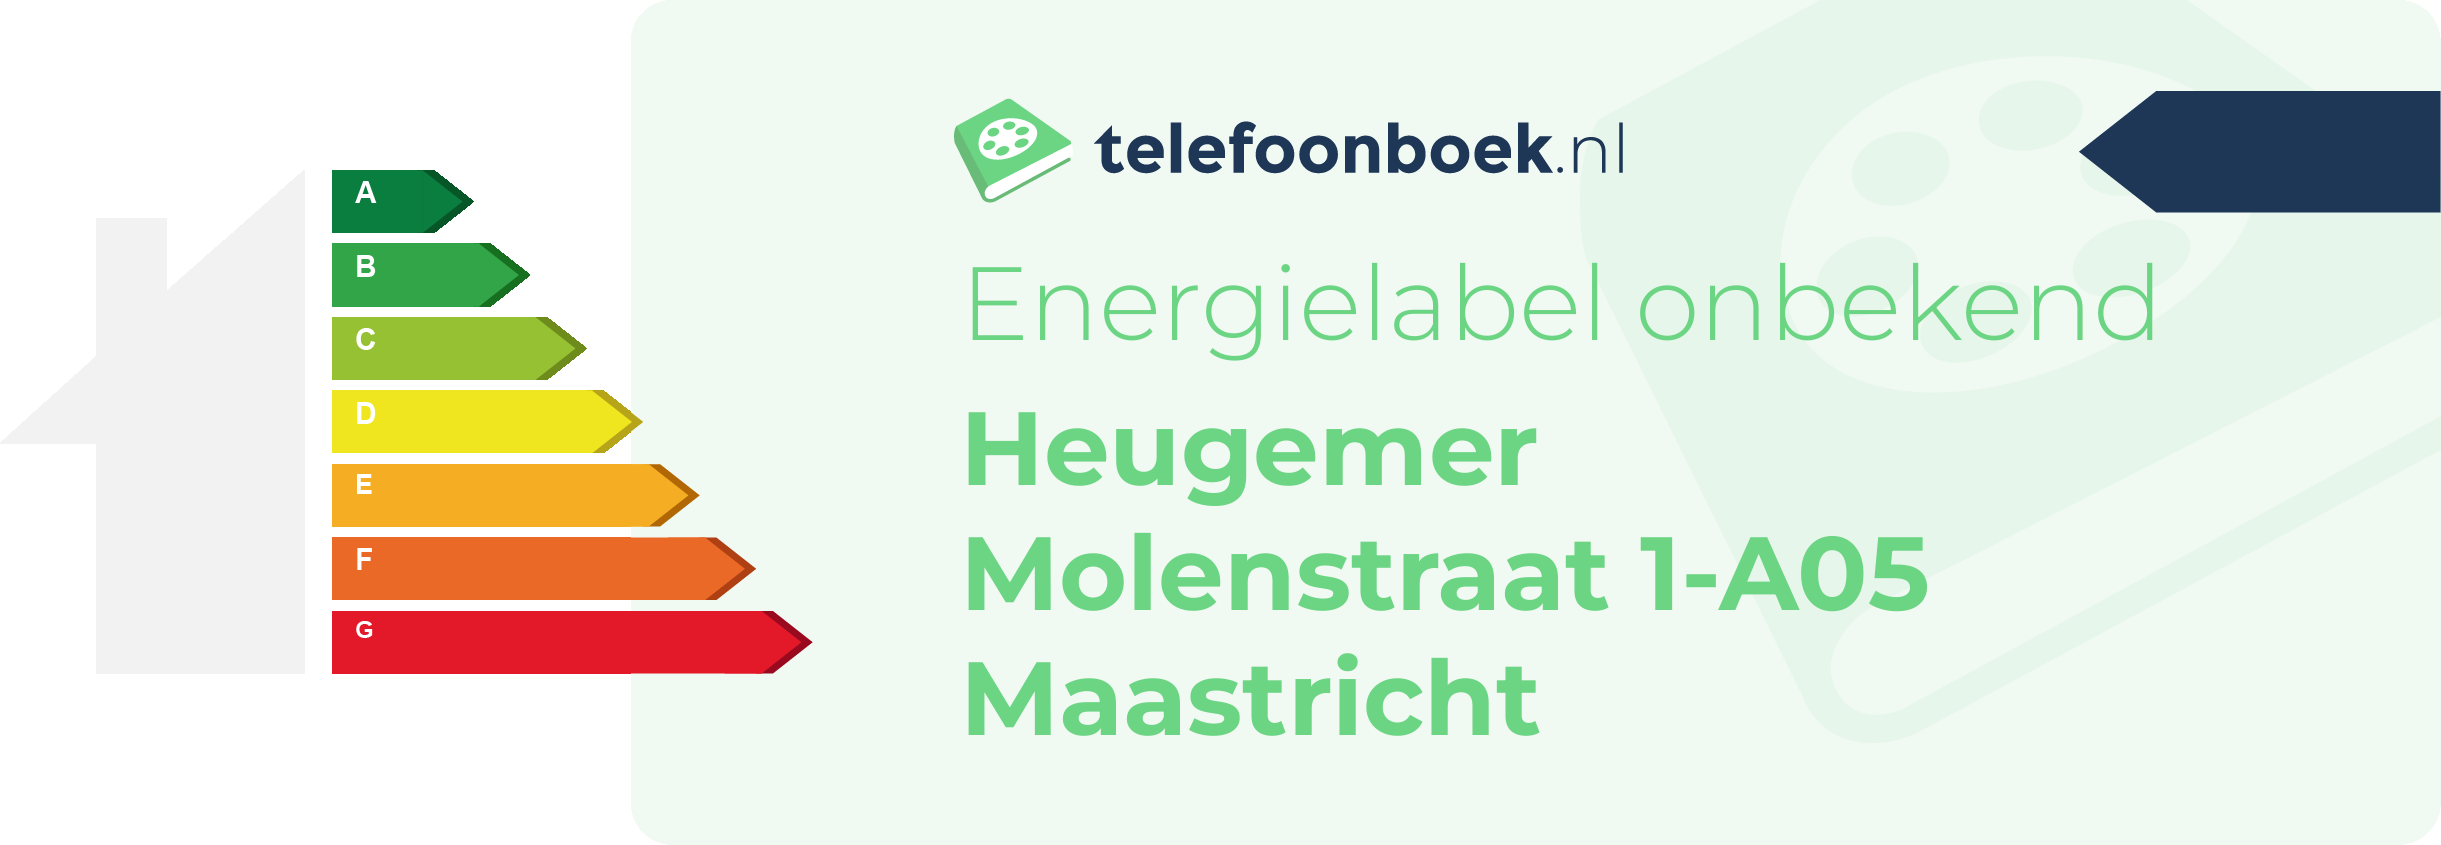 Energielabel Heugemer Molenstraat 1-A05 Maastricht